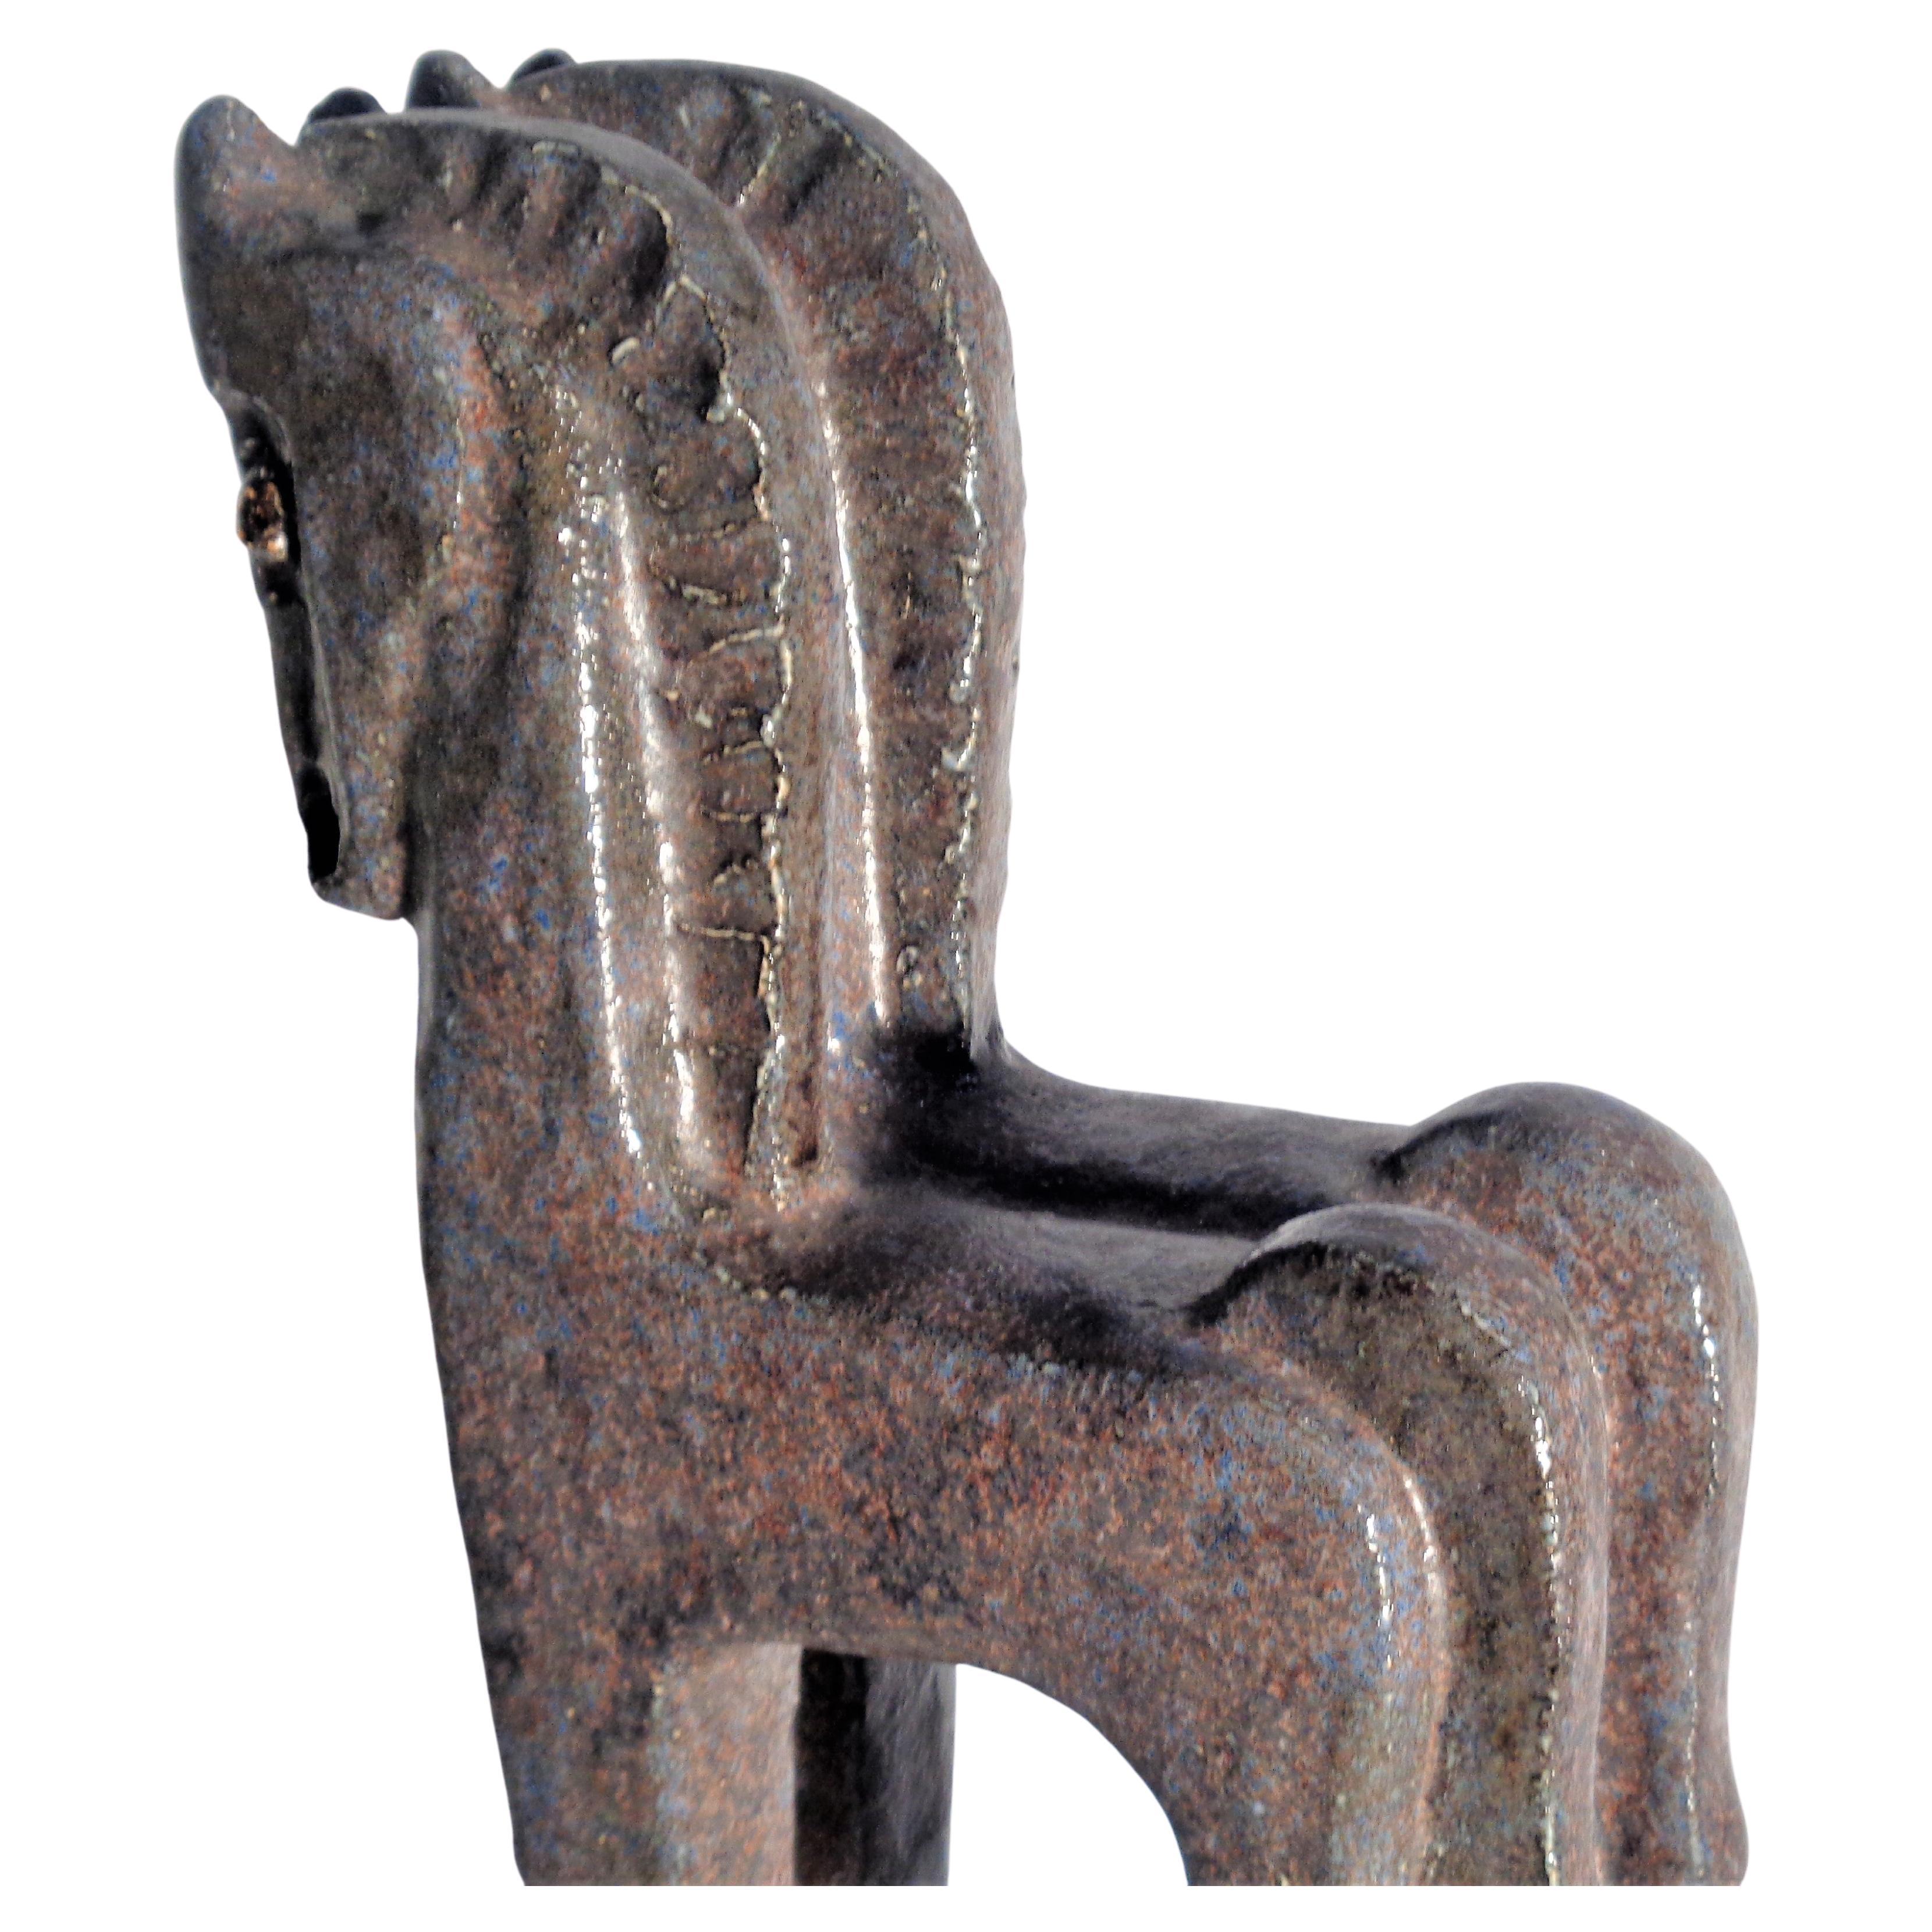 Cuit Sculpture de chevaux debout de style cubiste, Helmut Schaffenacker